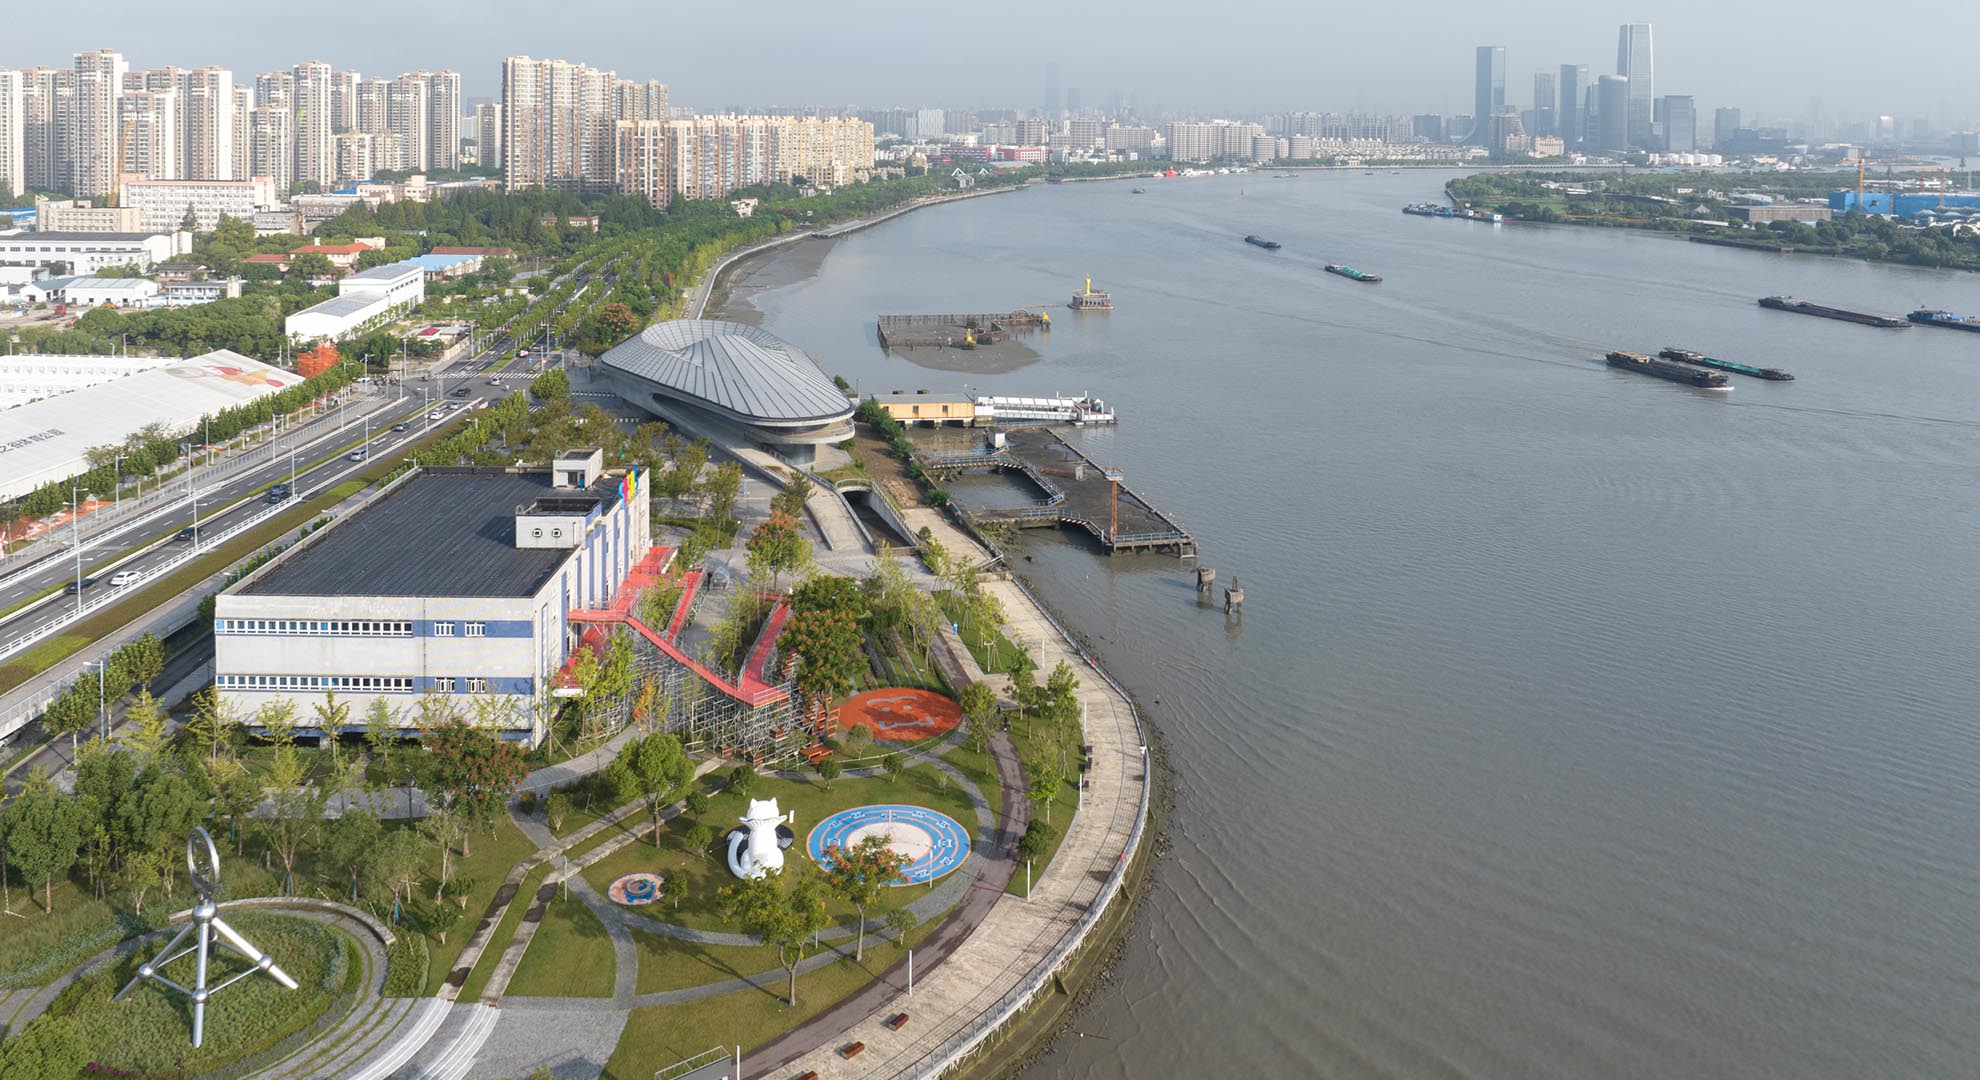 Vista general de la exposición Urban Space Art Season de Shangai.